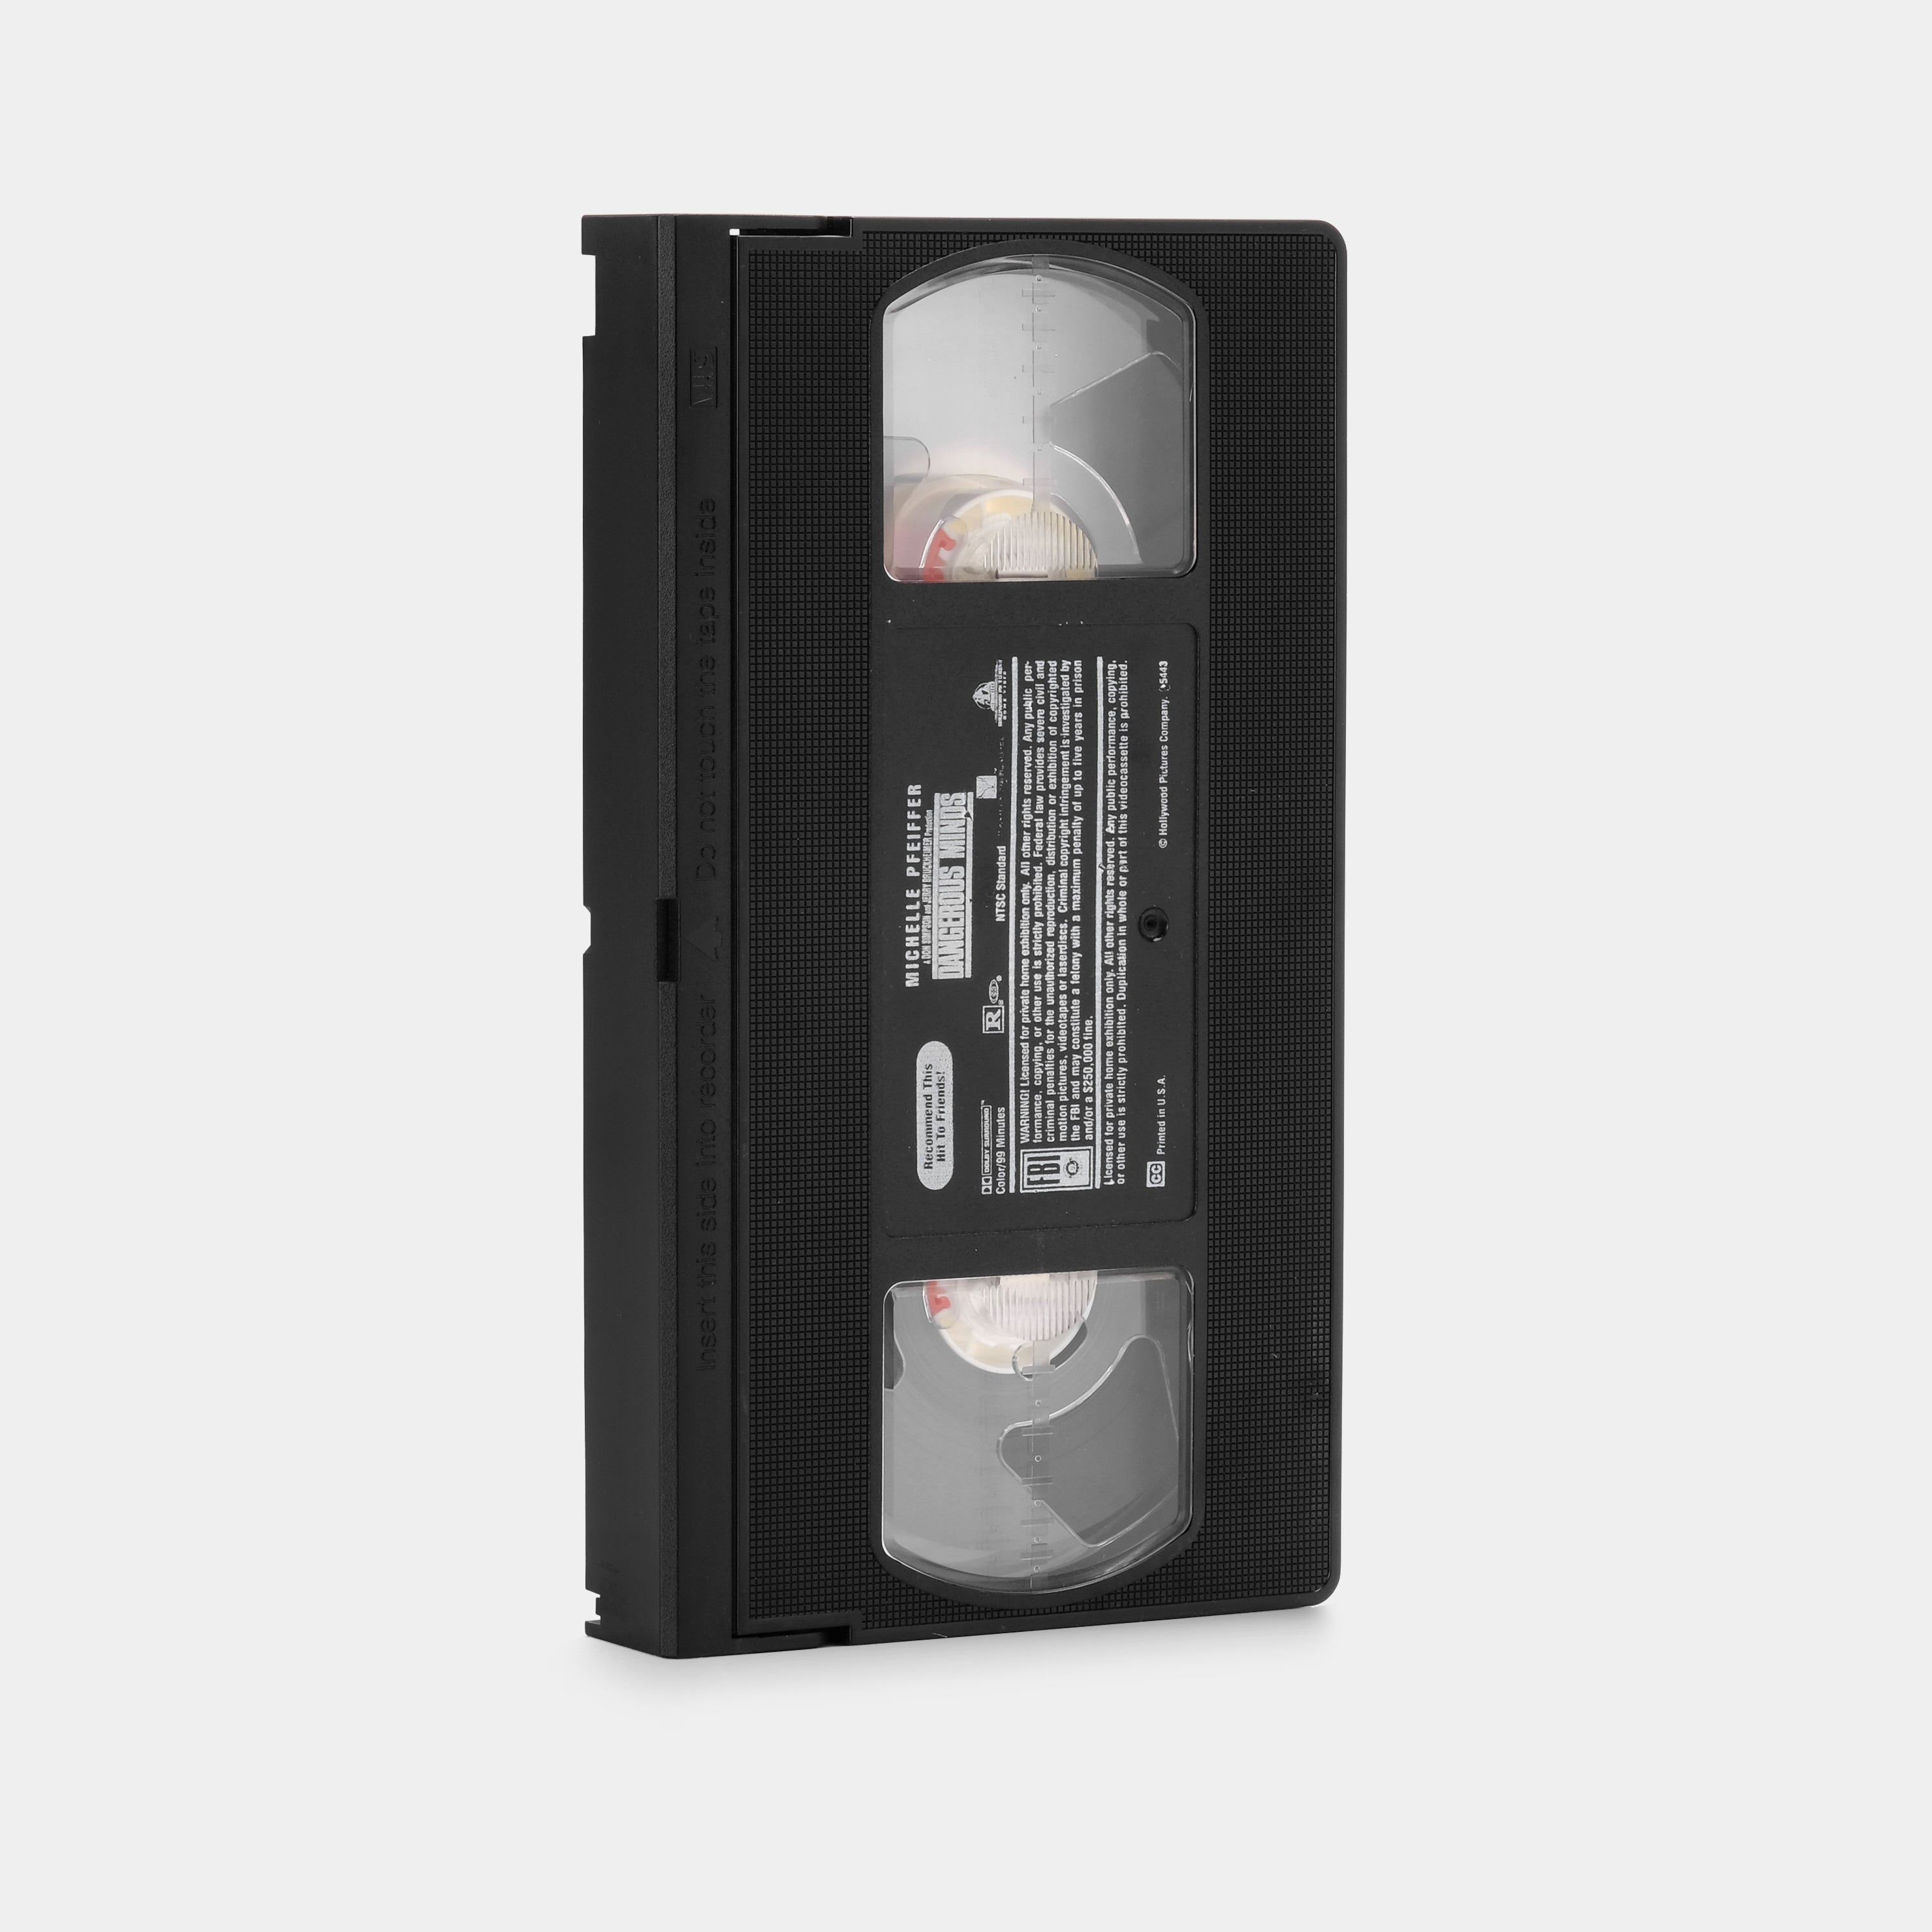 Dangerous Minds VHS Tape